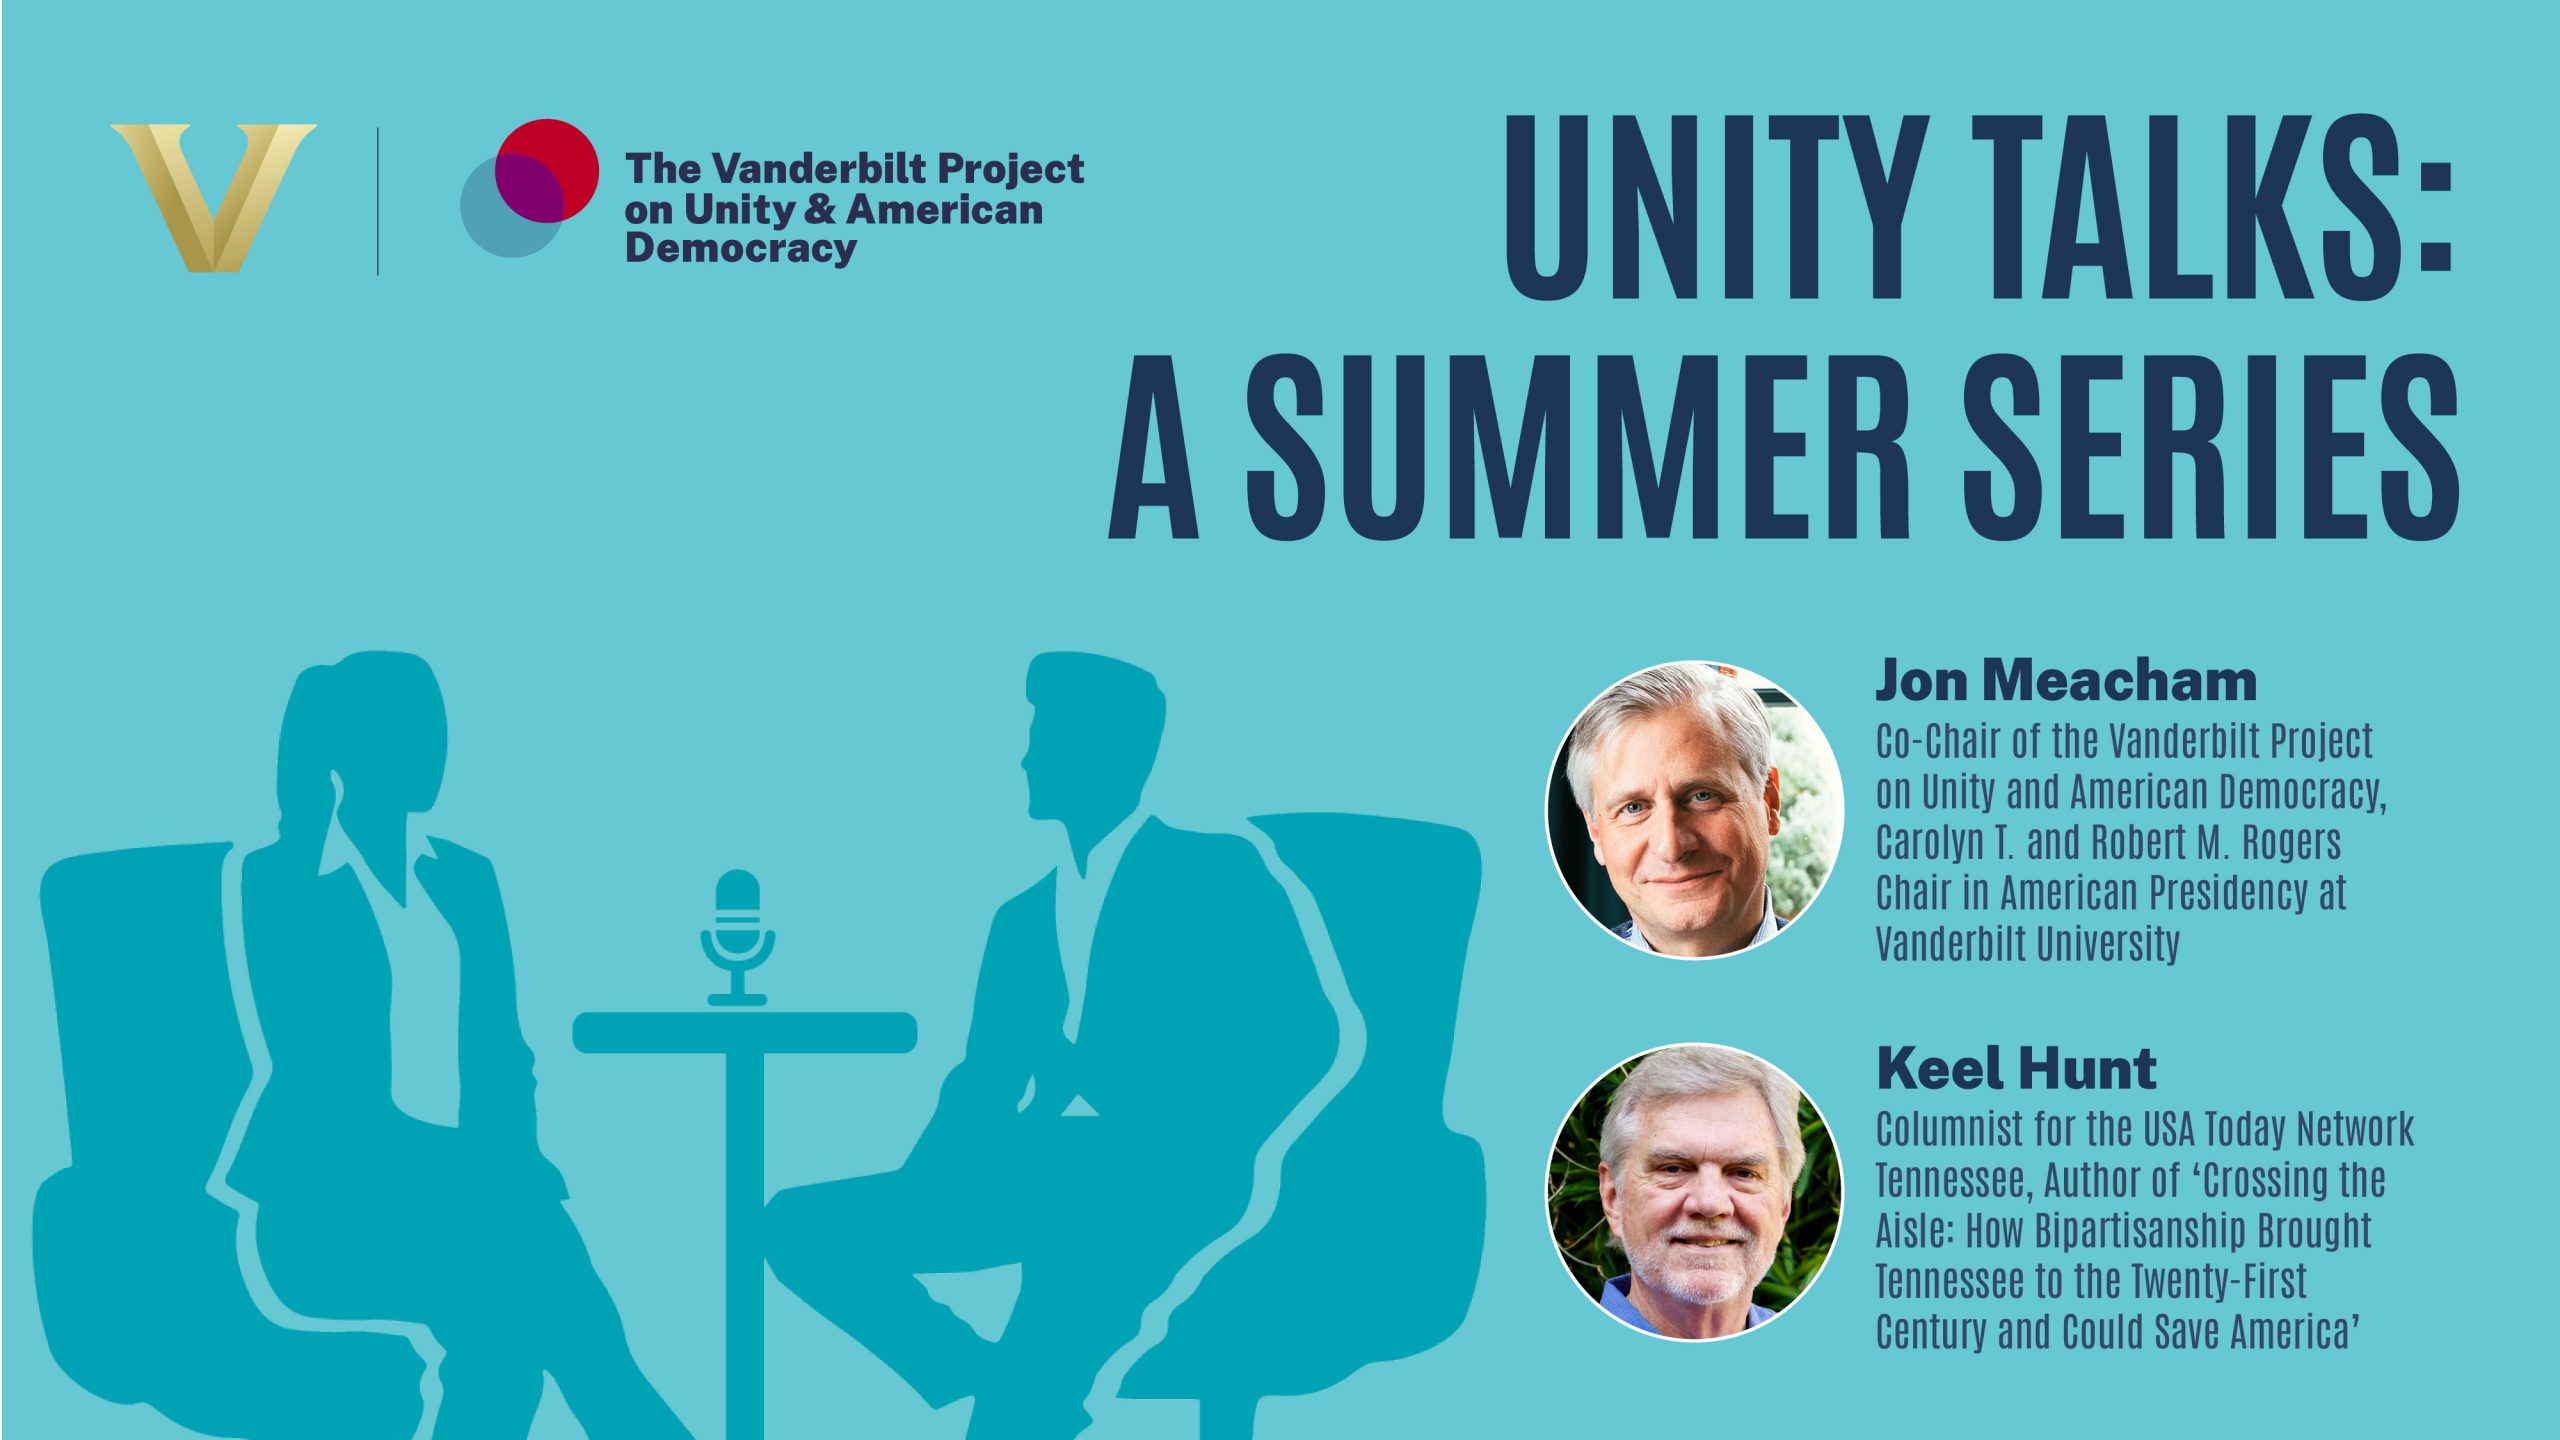 Unity Talks: Jon Meacham and Keel Hunt